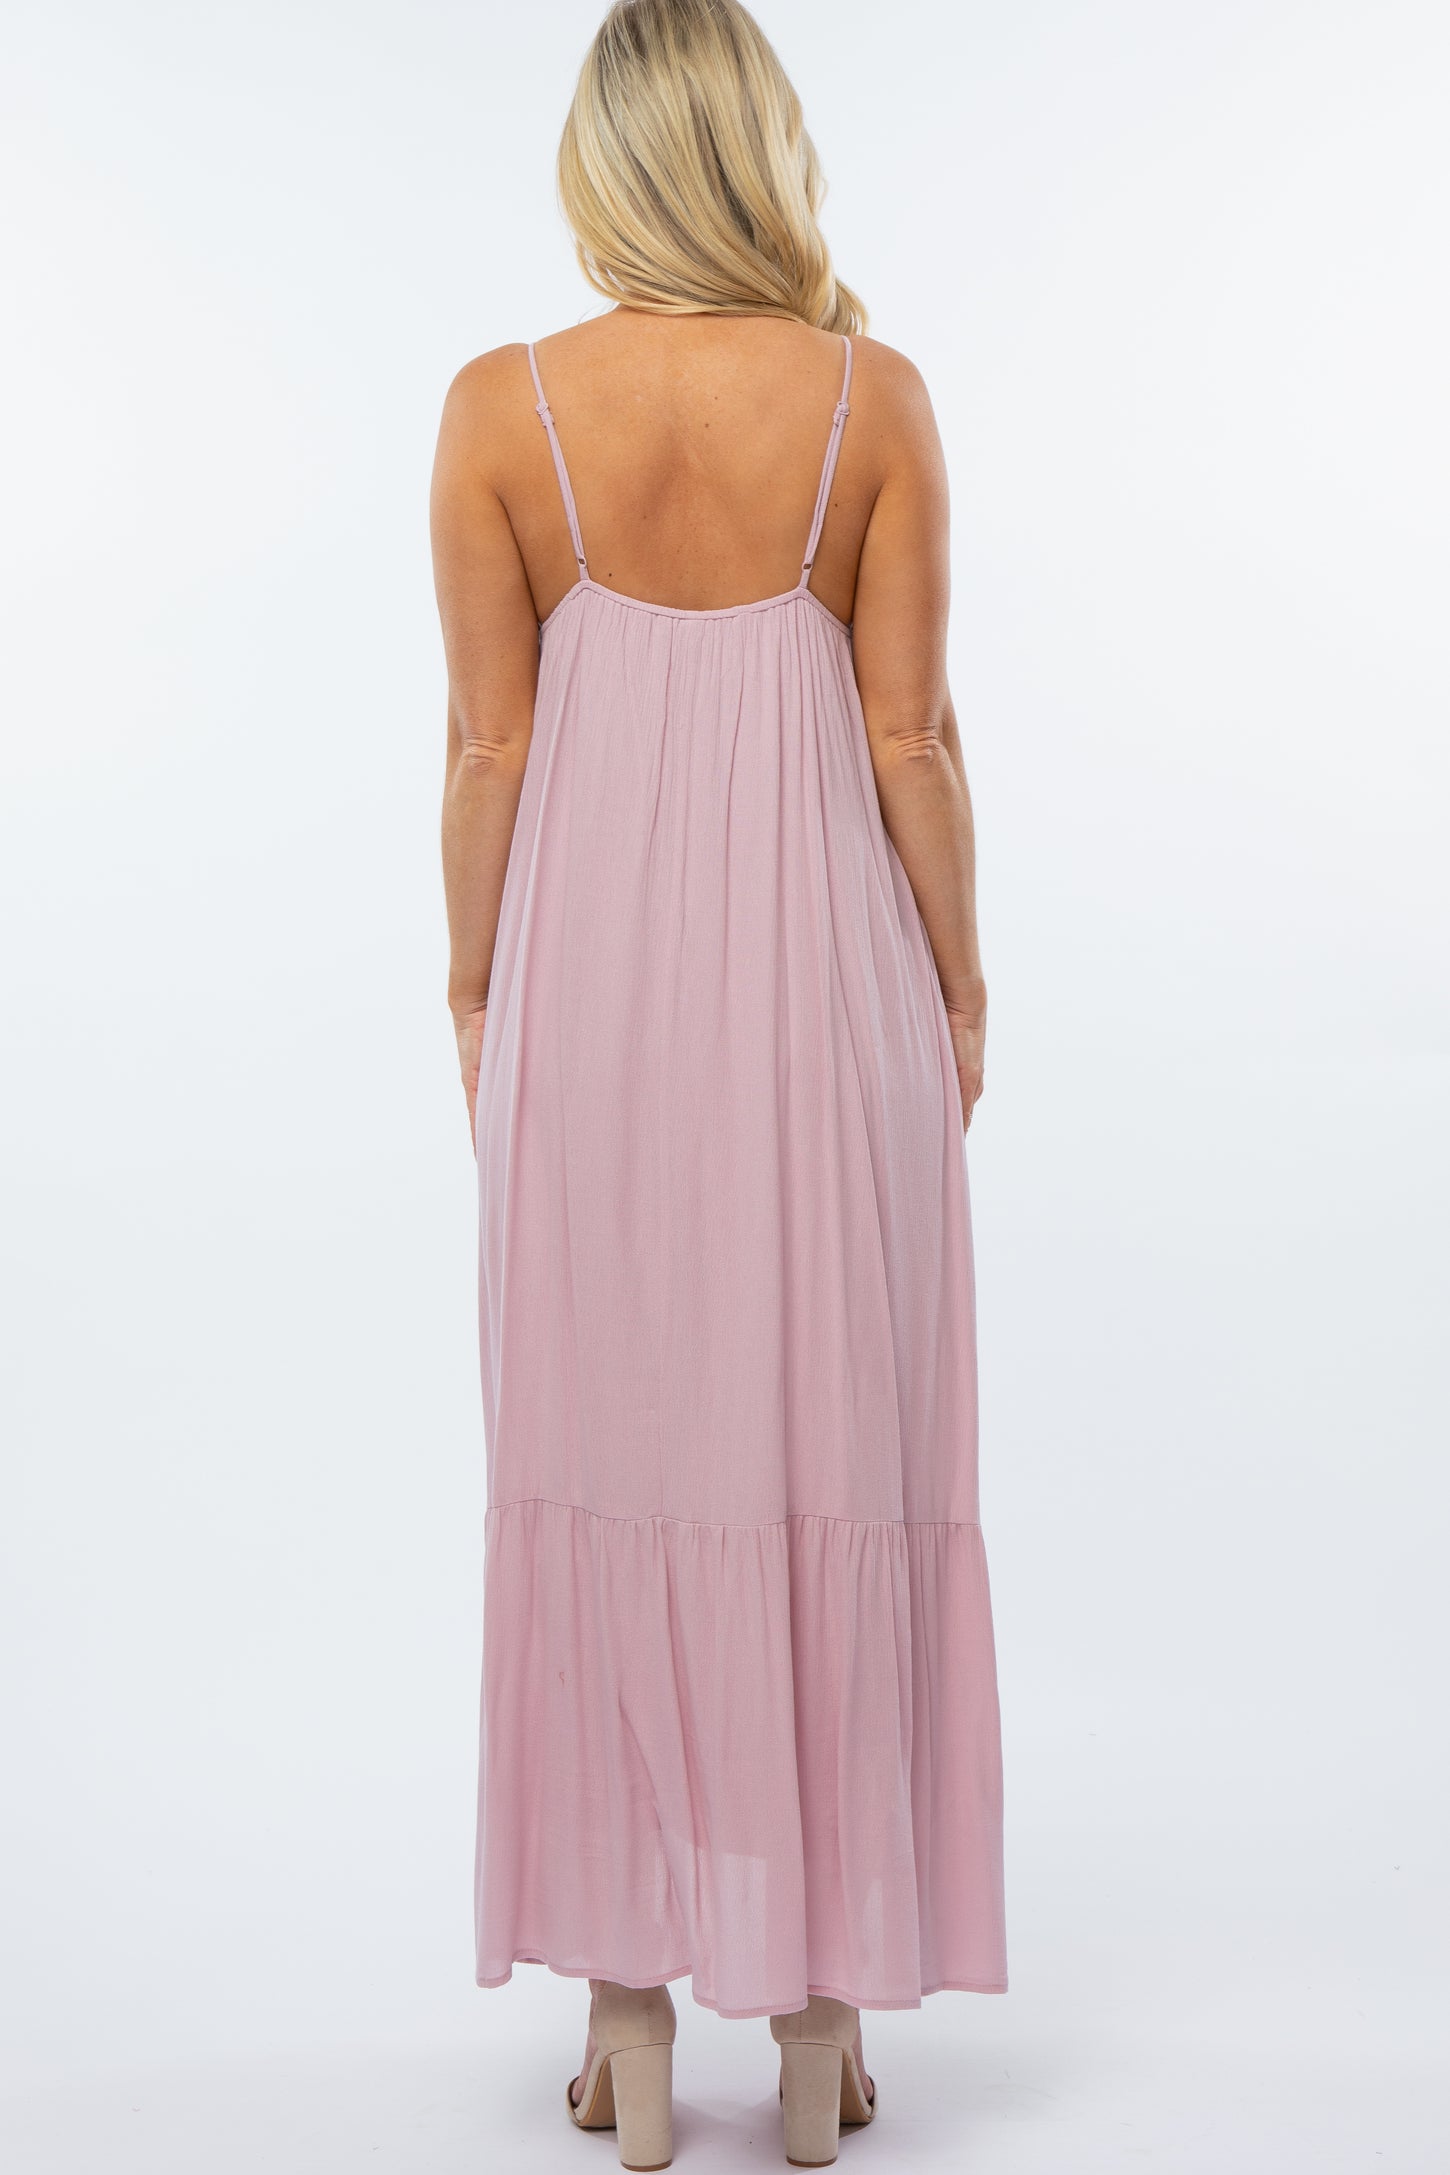 Light Pink Deep V-Neckline Maternity Maxi Dress